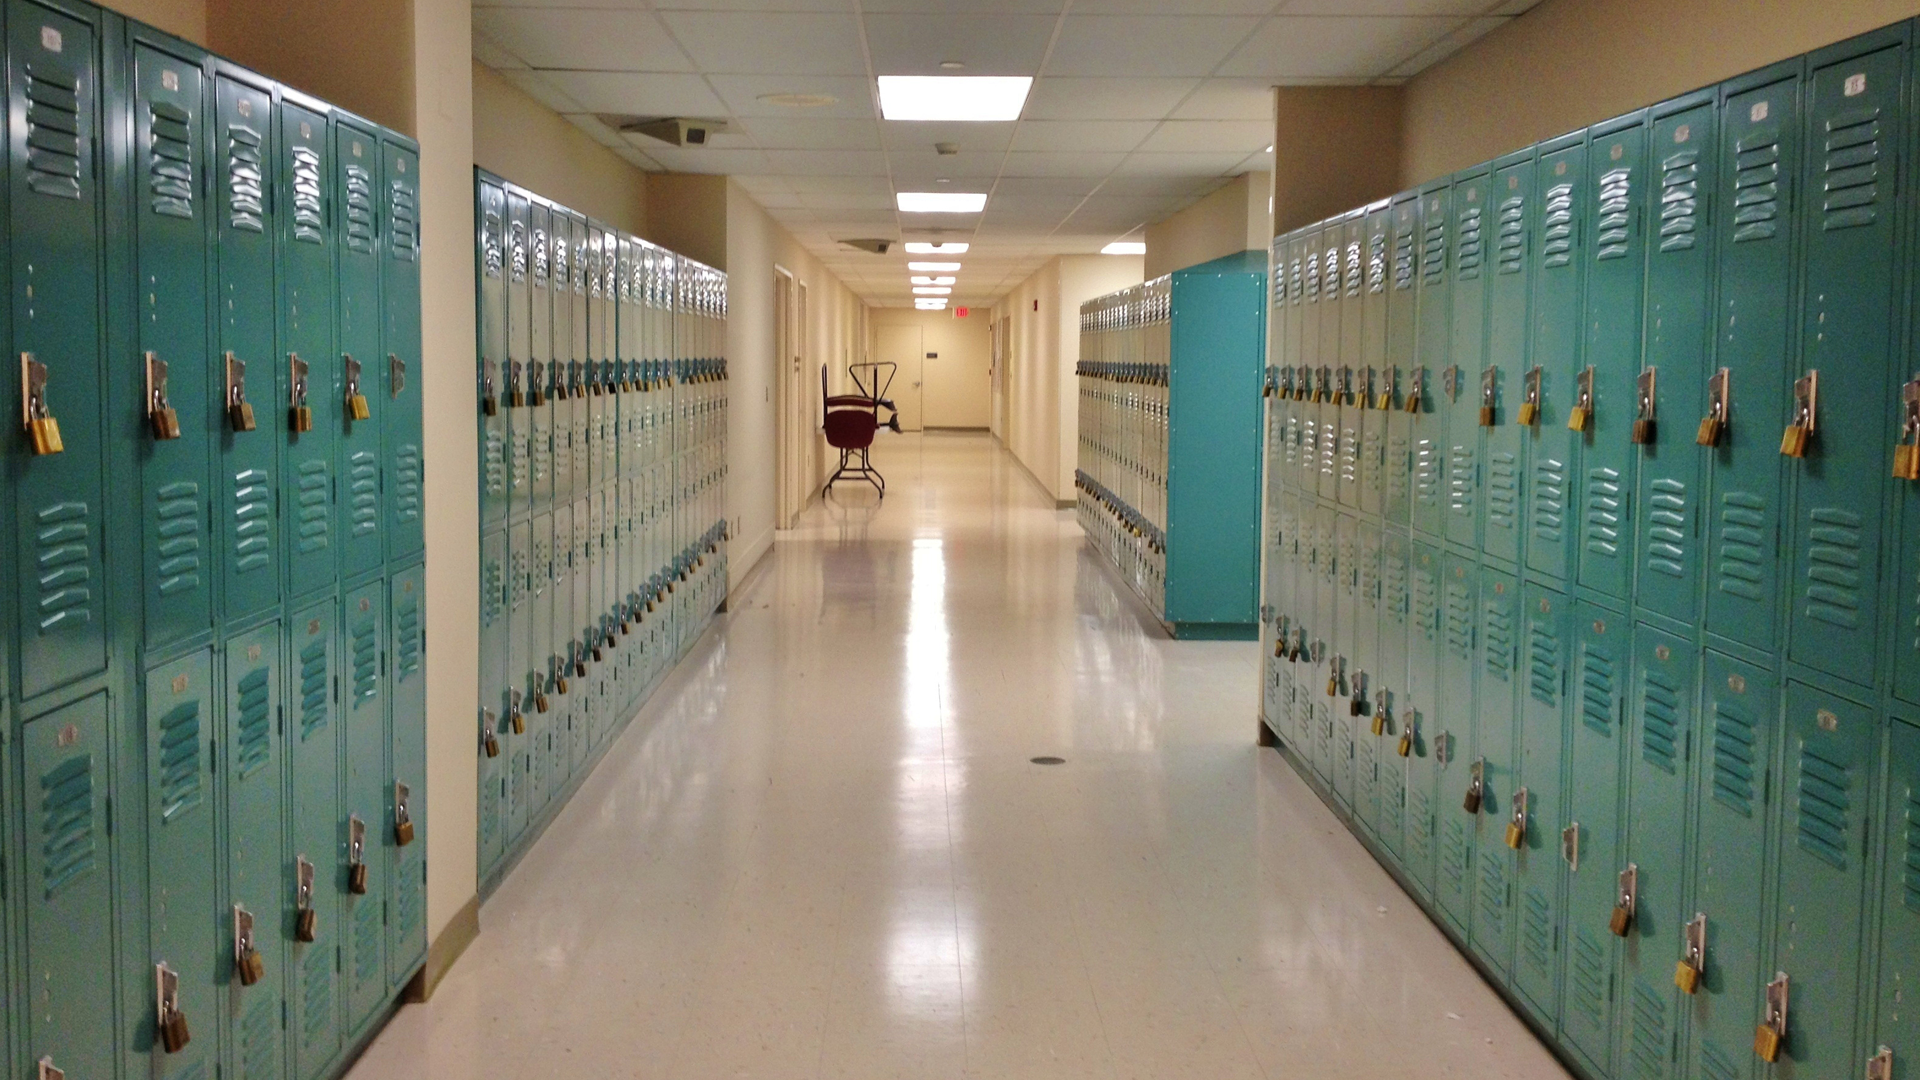 An empty school corridor